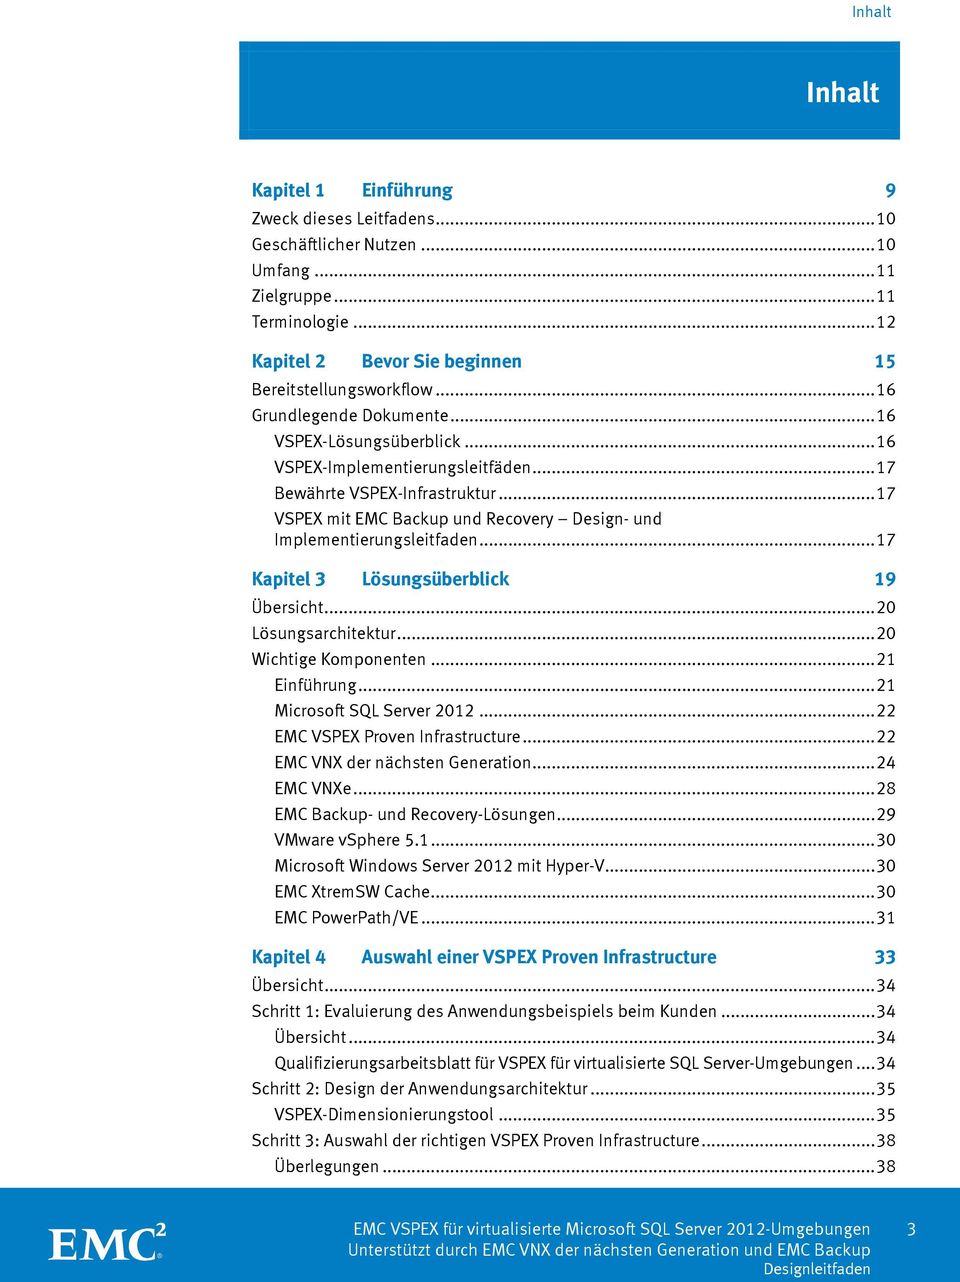 .. 17 VSPEX mit EMC Backup und Recovery Design- und Implementierungsleitfaden... 17 Kapitel 3 Lösungsüberblick 19 Übersicht... 20 Lösungsarchitektur... 20 Wichtige Komponenten... 21 Einführung.